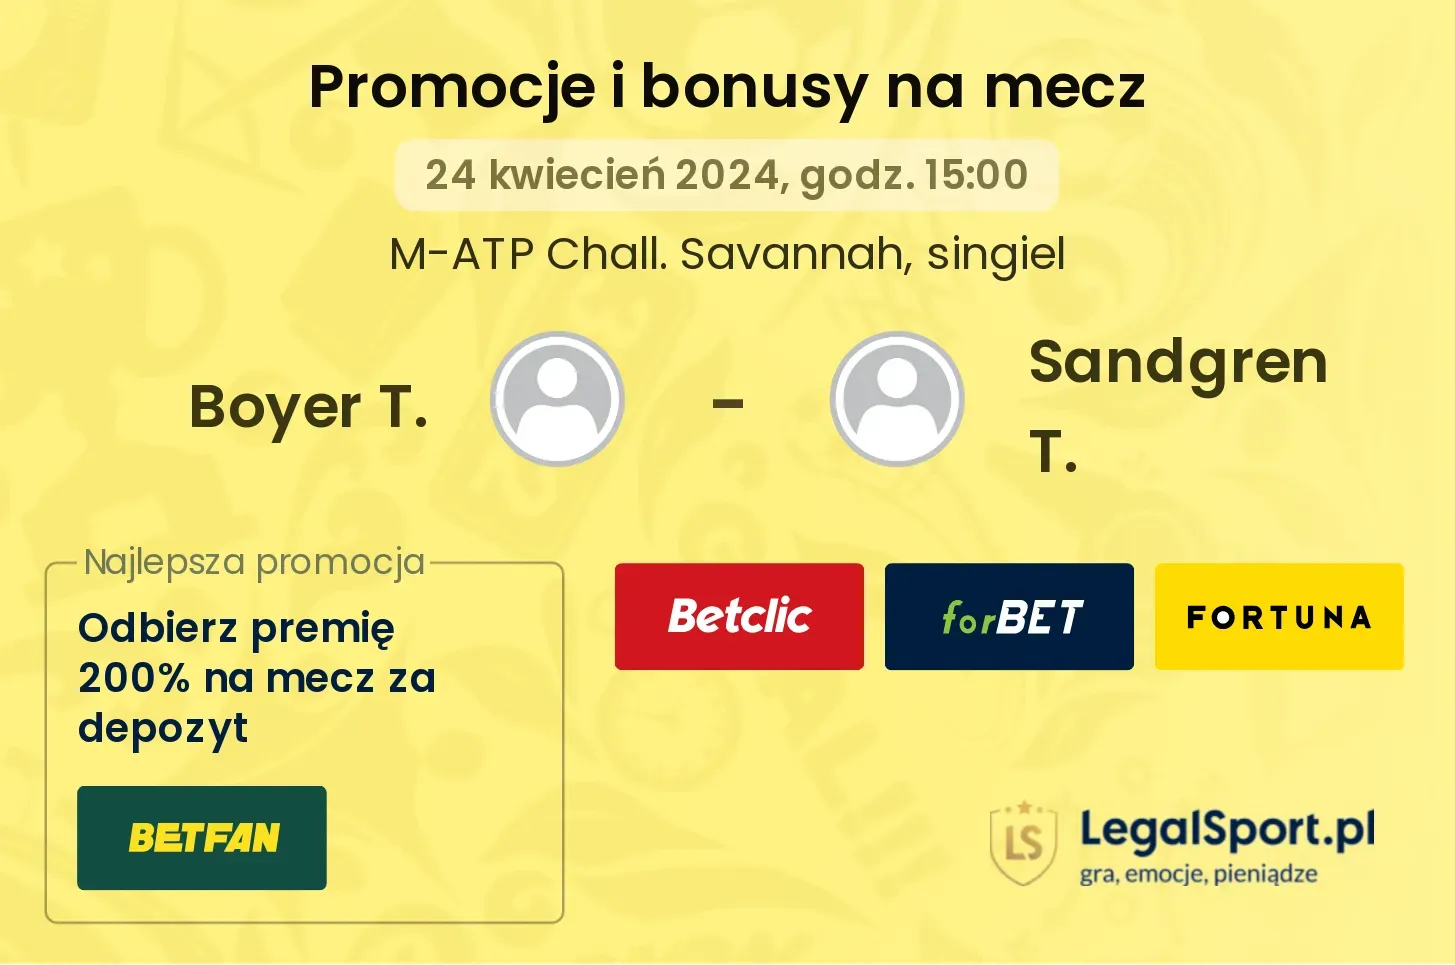 Boyer T. - Sandgren T. promocje bonusy na mecz